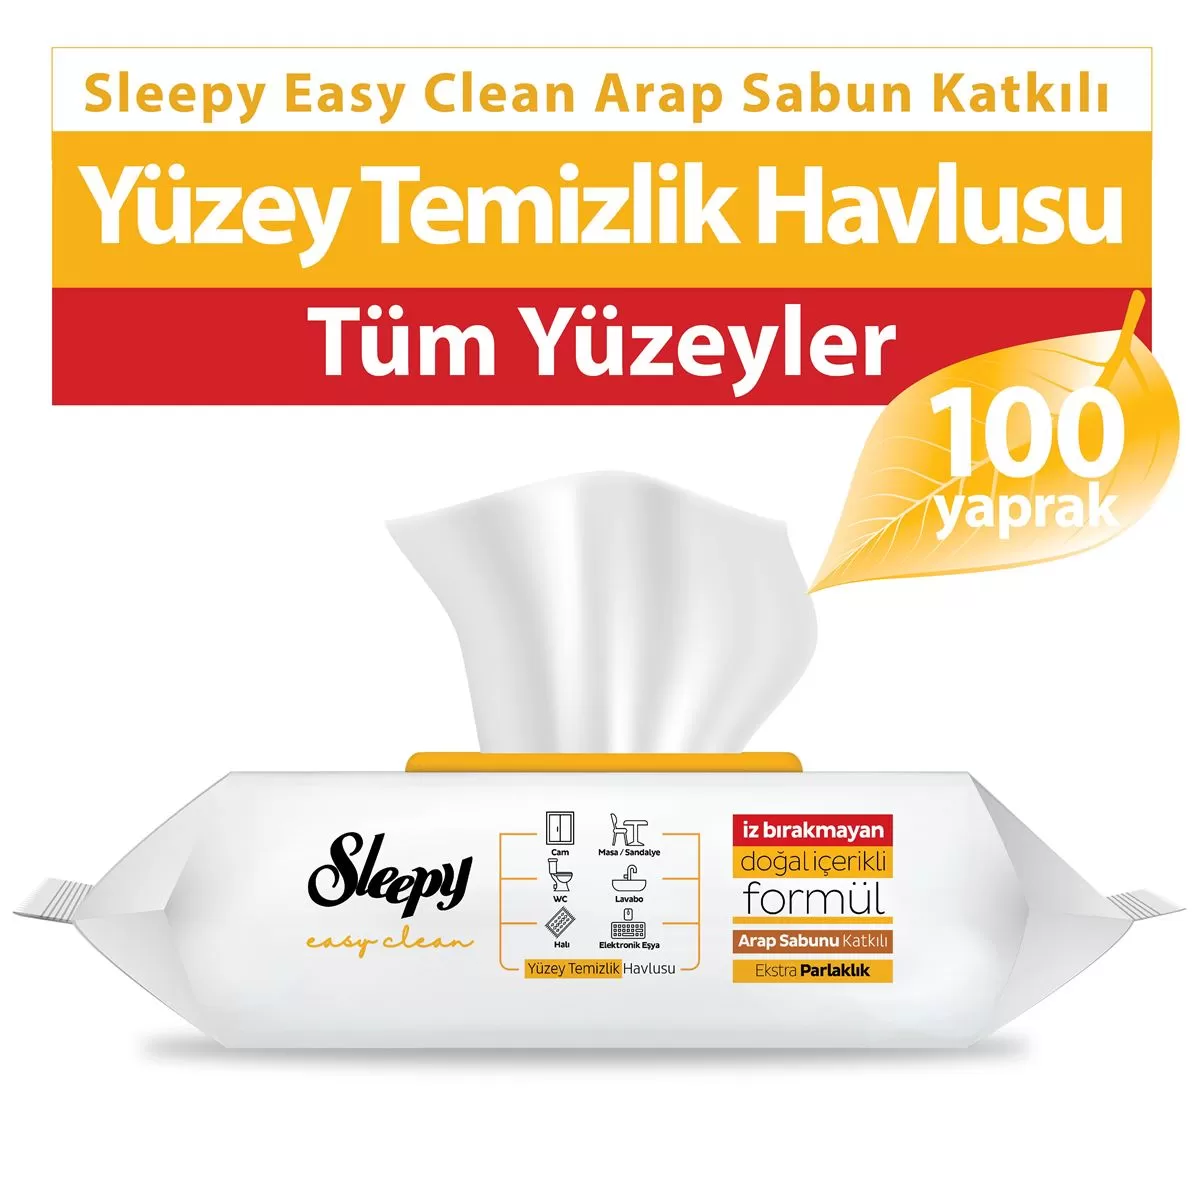 Sleepy Easy Clean Yüzey Temizlik Havlusu Arap Sabun Katkılı 100 Yaprak 9 Paket